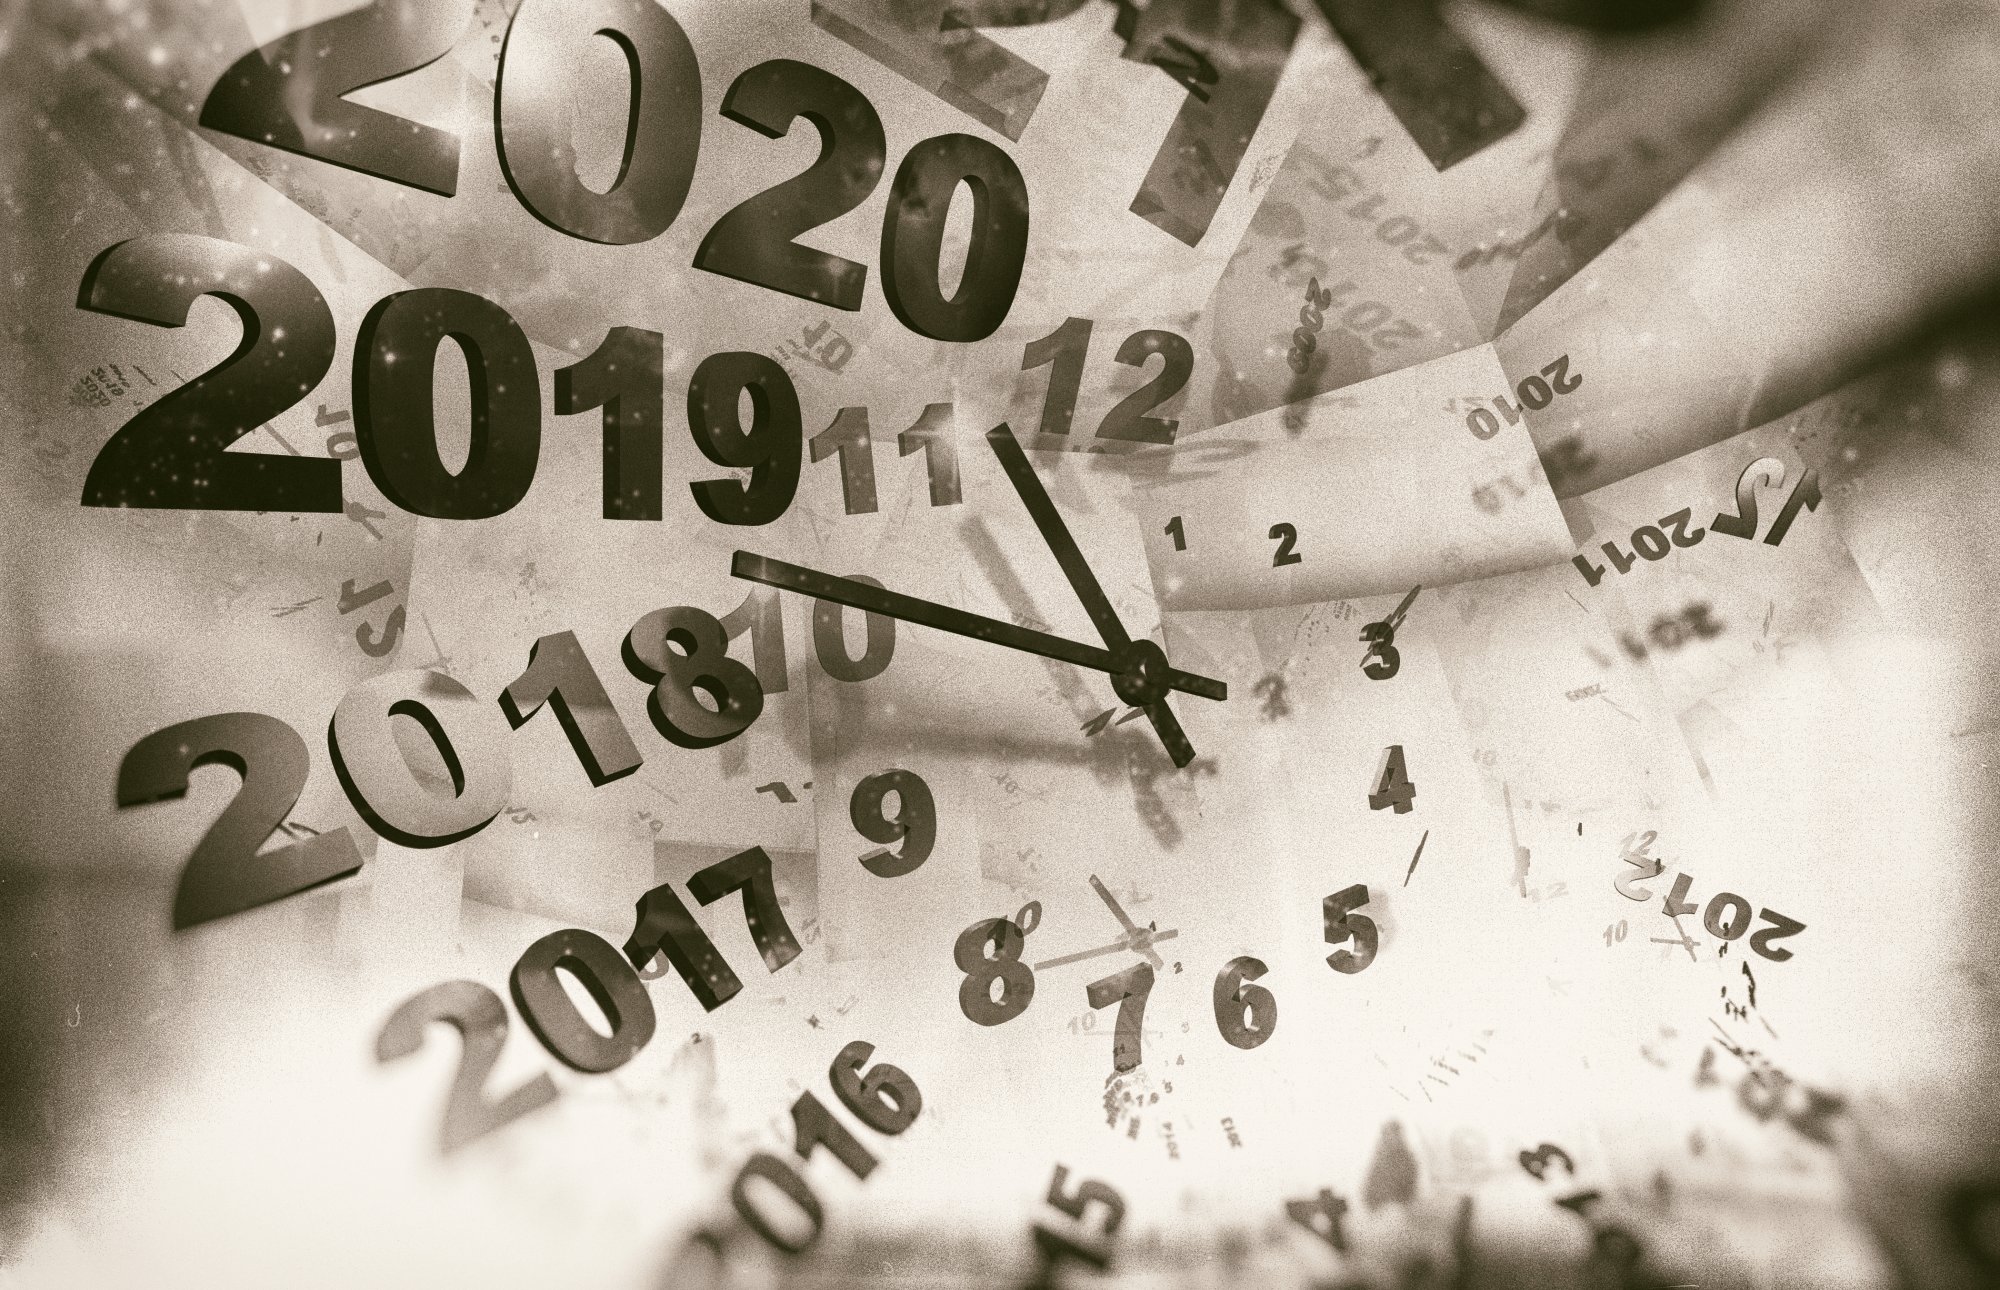 Δεν είμαστε στο 2019 – άρα ας μιλάμε για το 2025 όχι για το 2015